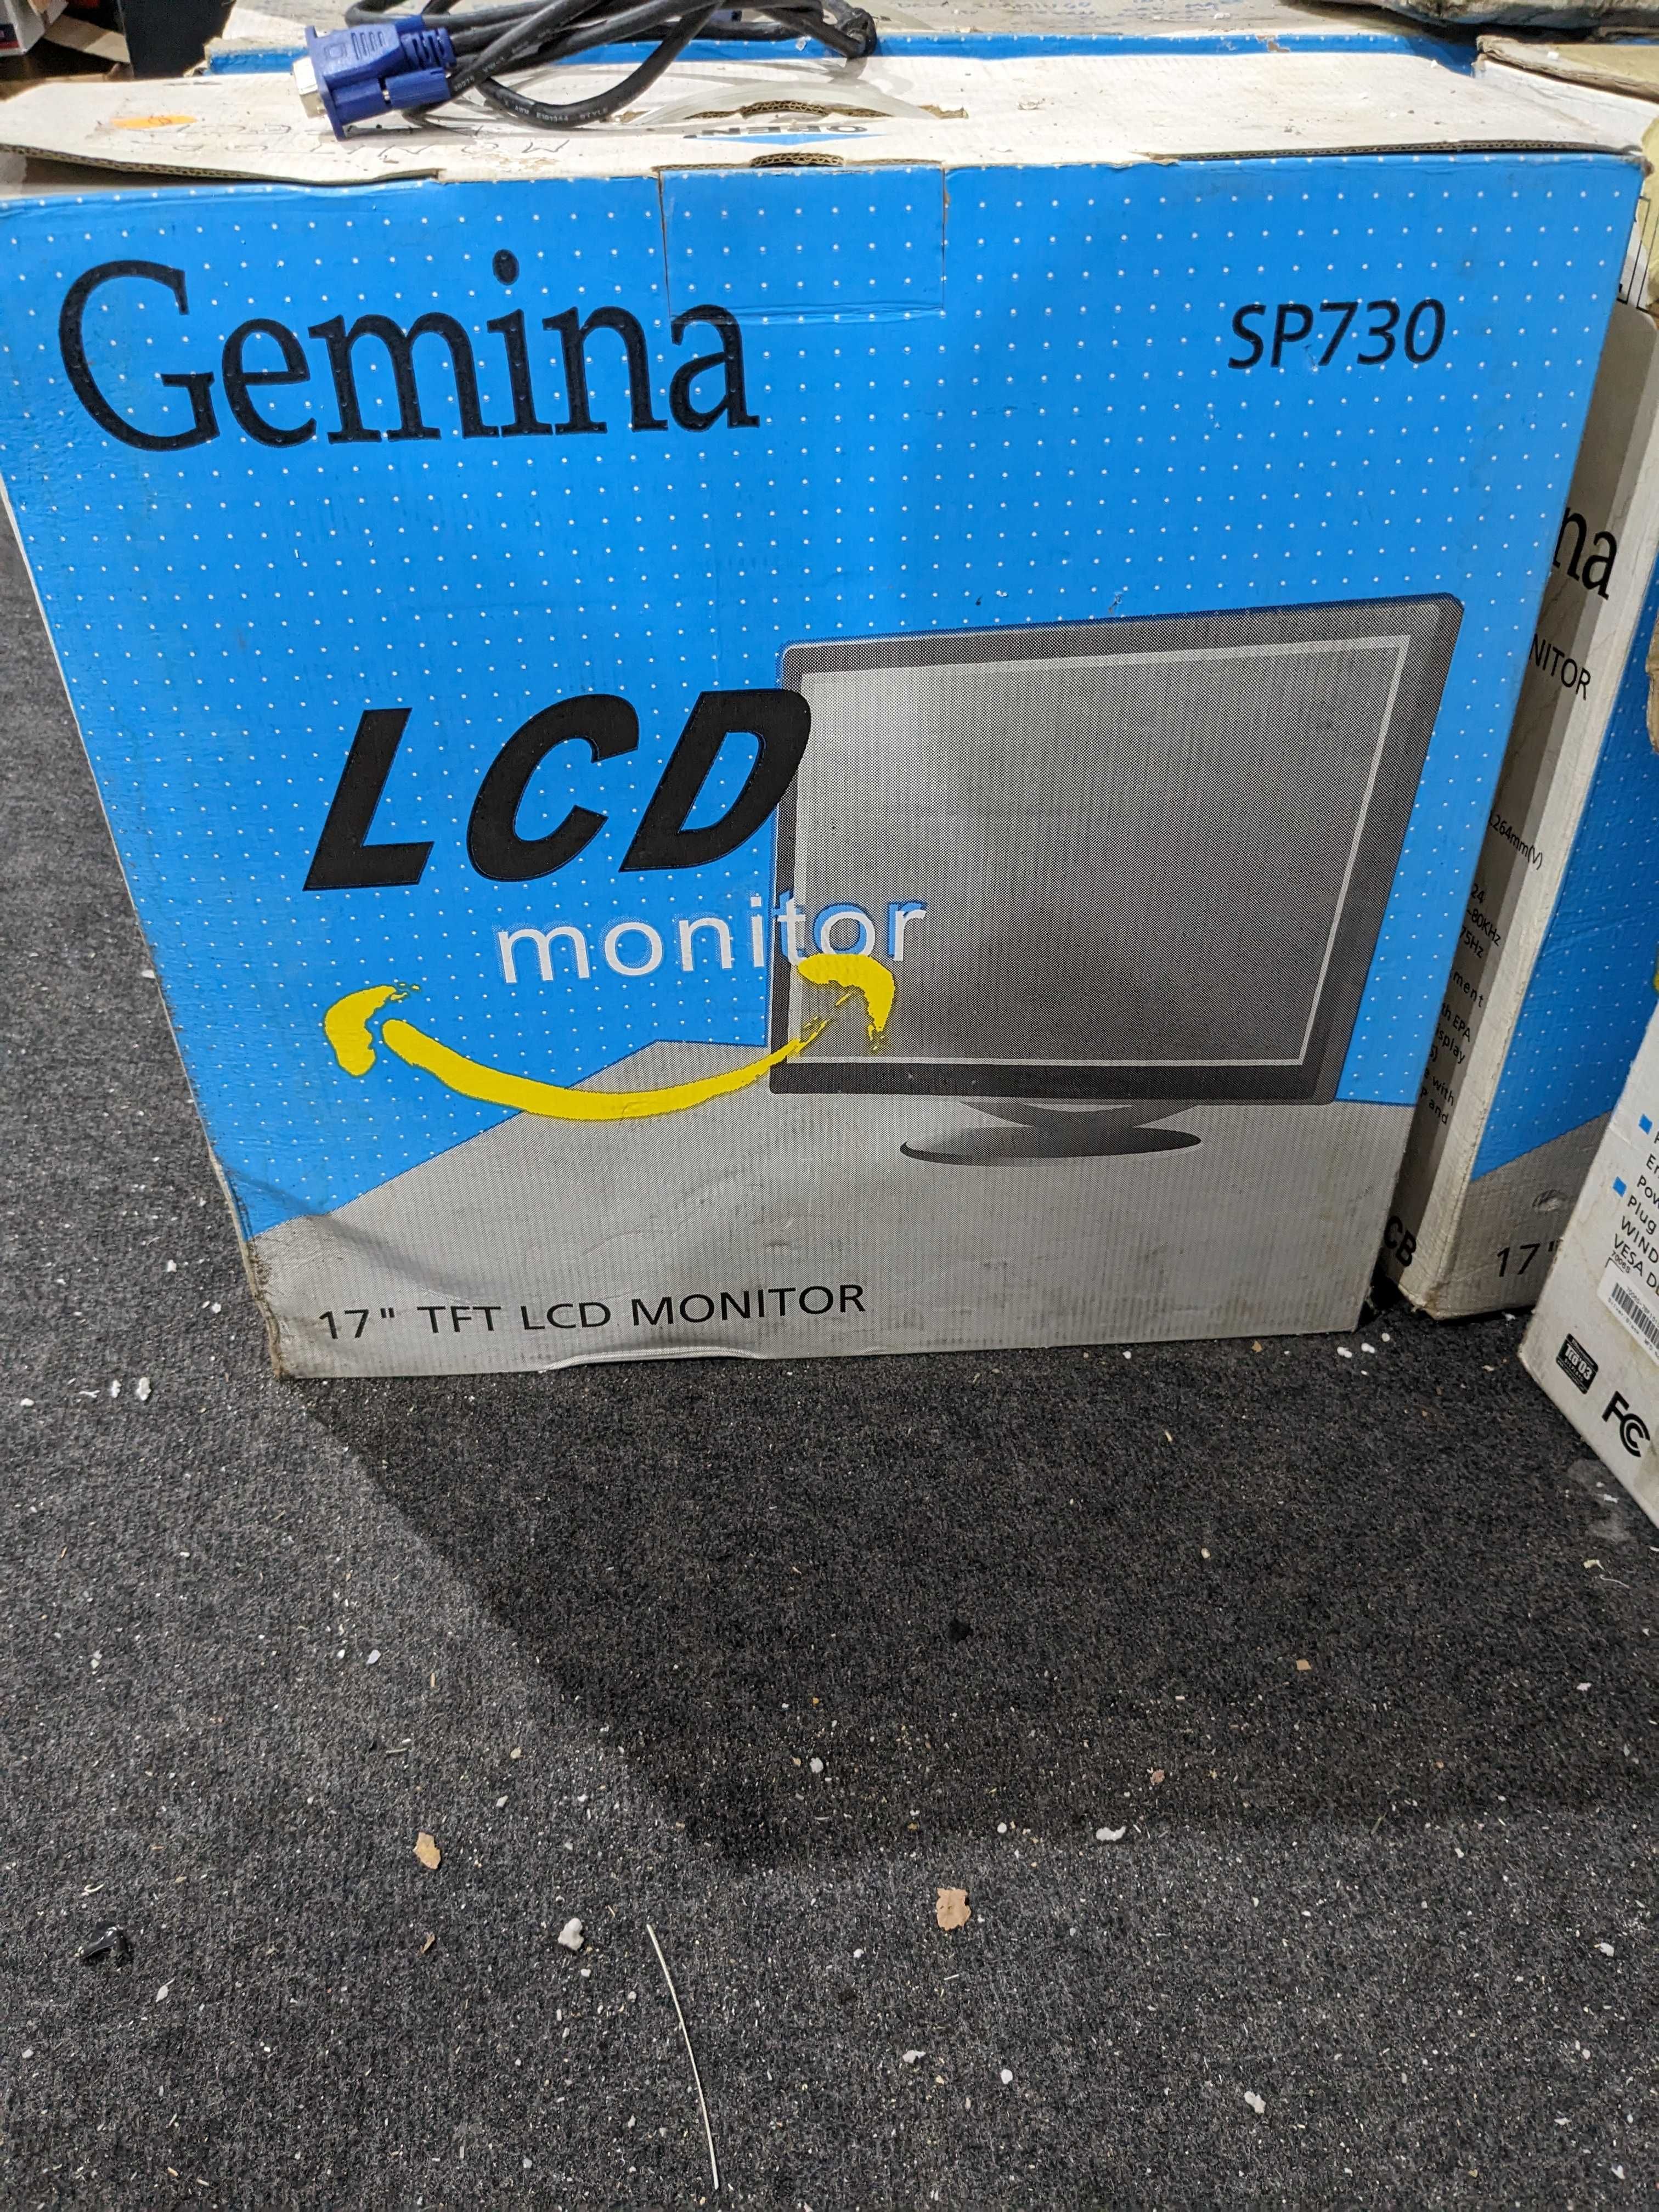 Monitor 17" Gemina